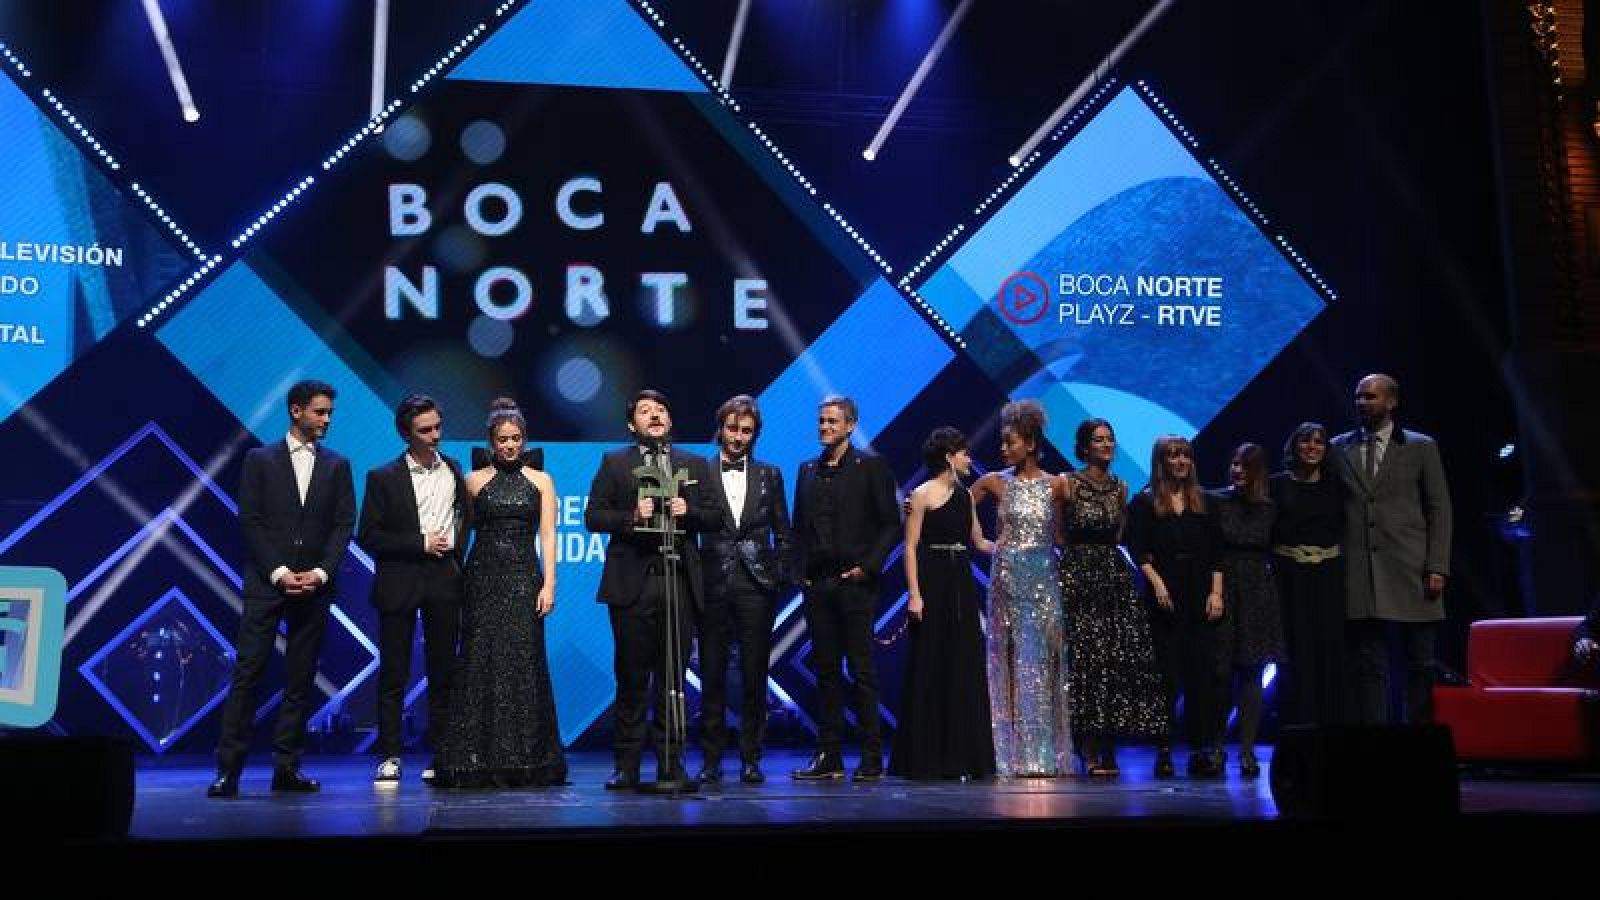 Boca Norte - Playz y el equipo de 'Boca Norte' recogen el Premio Ondas 2019